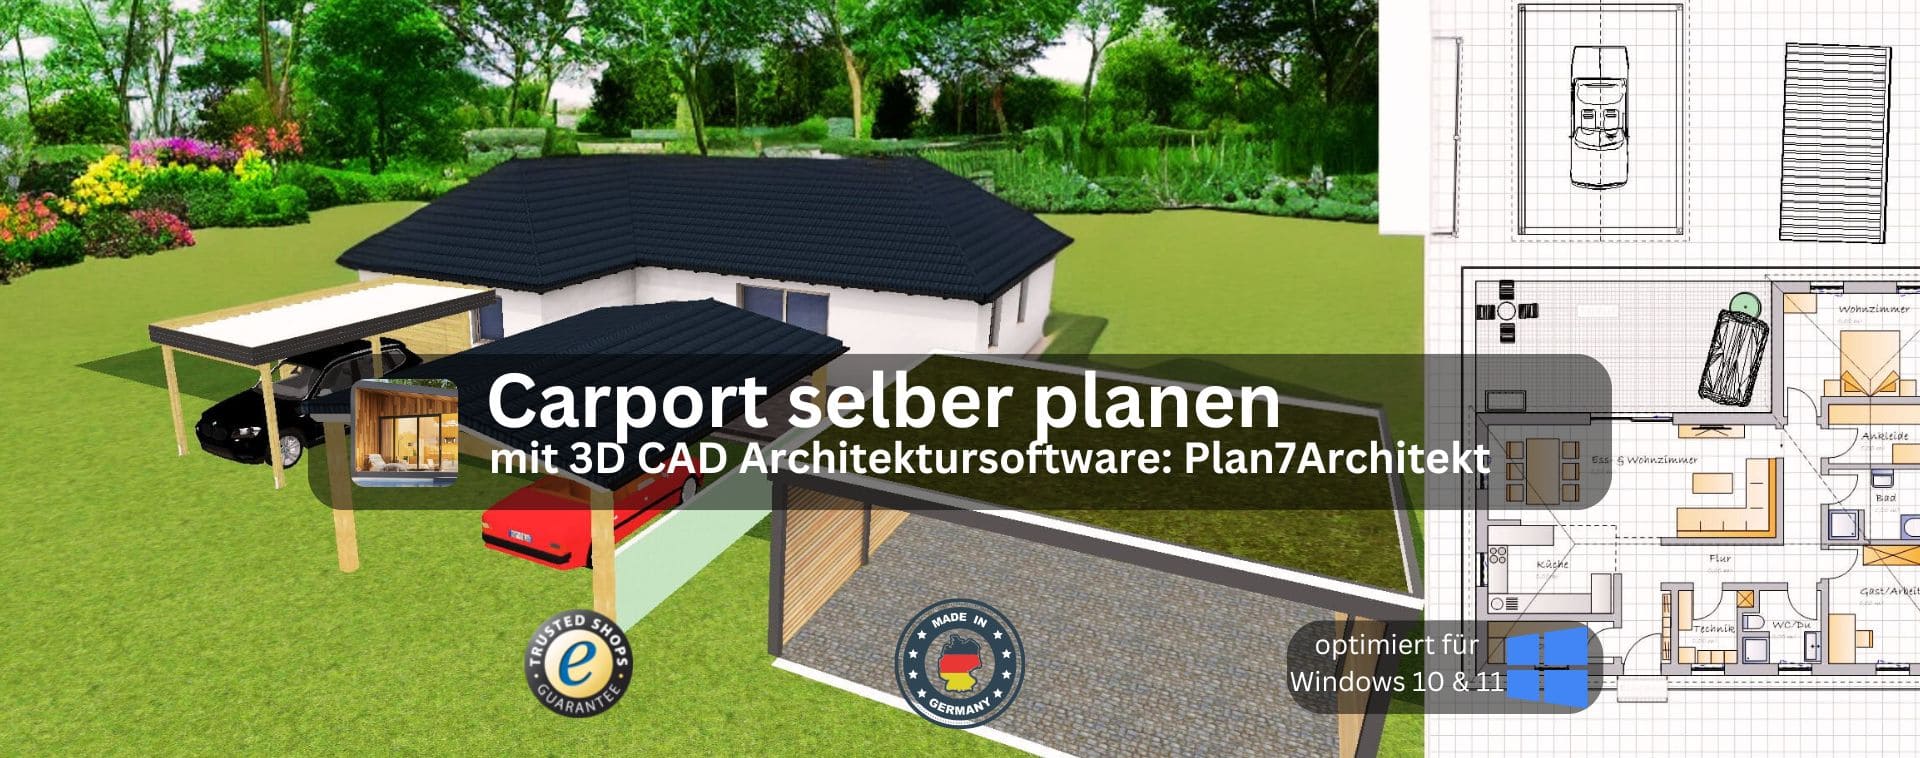 Carport selber planen mit dem Plan7Architekt